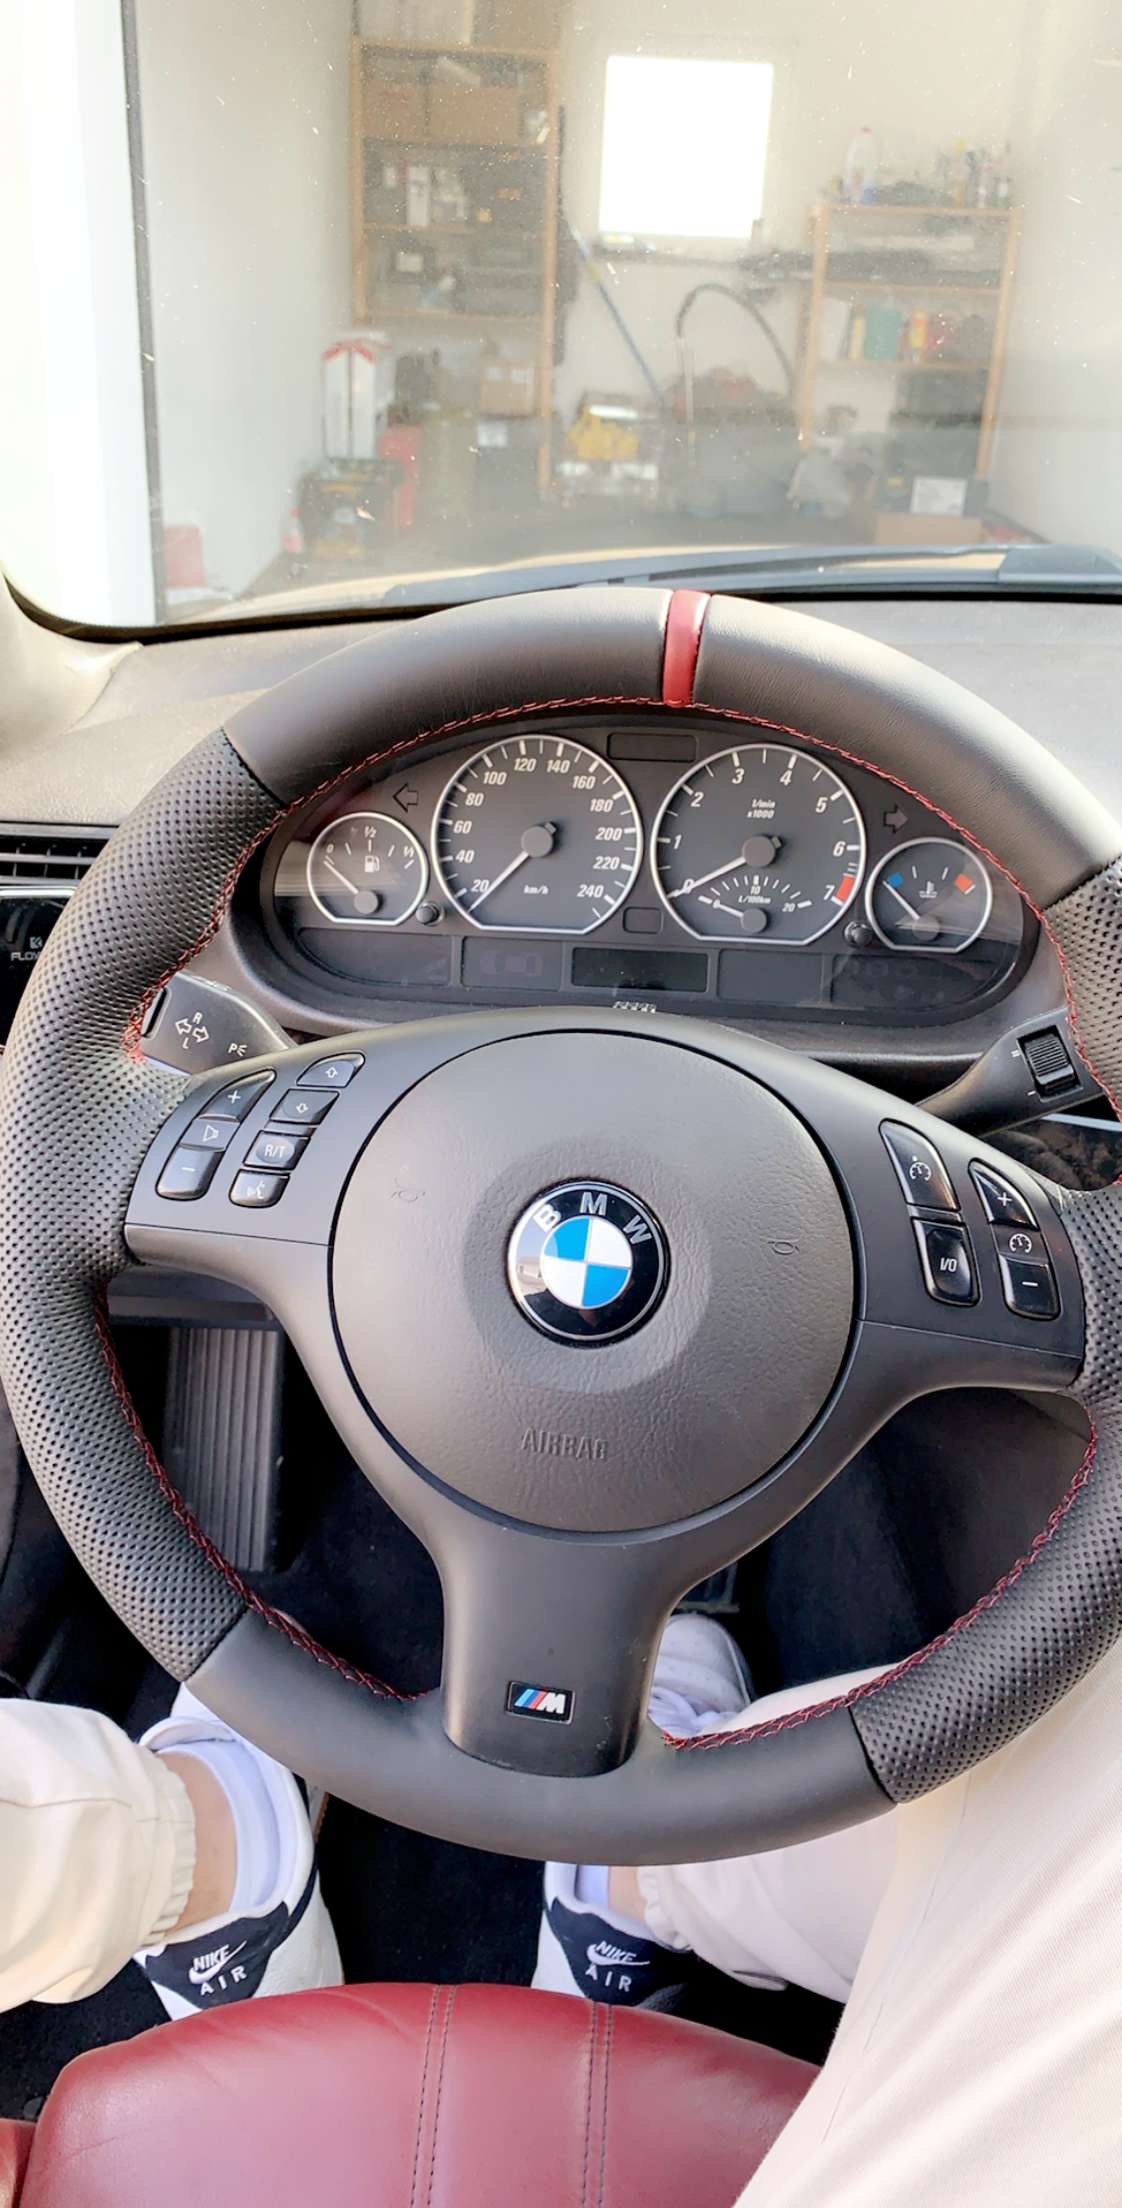 Neues Lenkrad - BMW E46 Forum